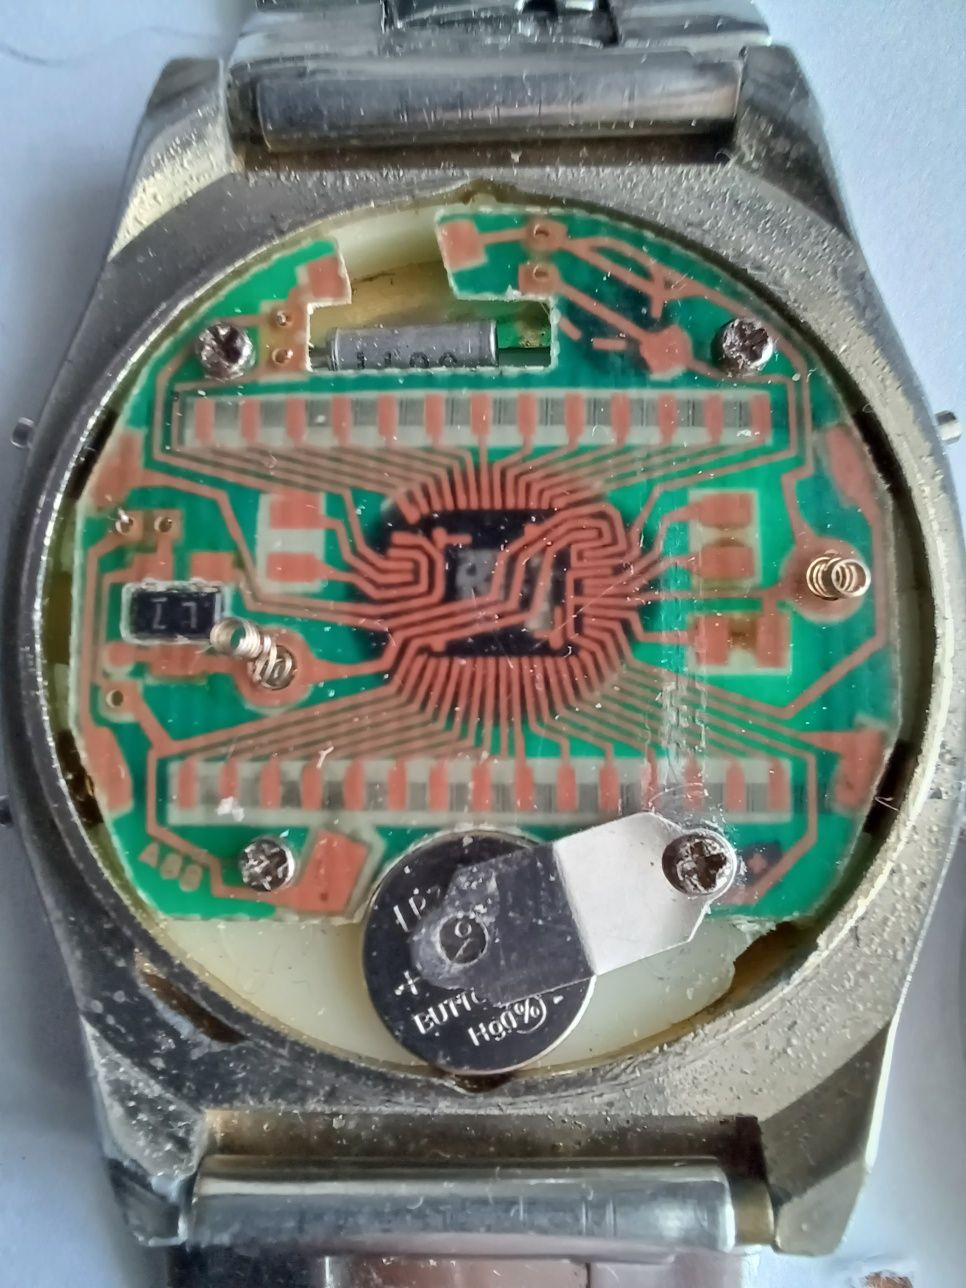 Zegarek elektroniczny Nelsonic - vintage - oryginał lata 80tych.